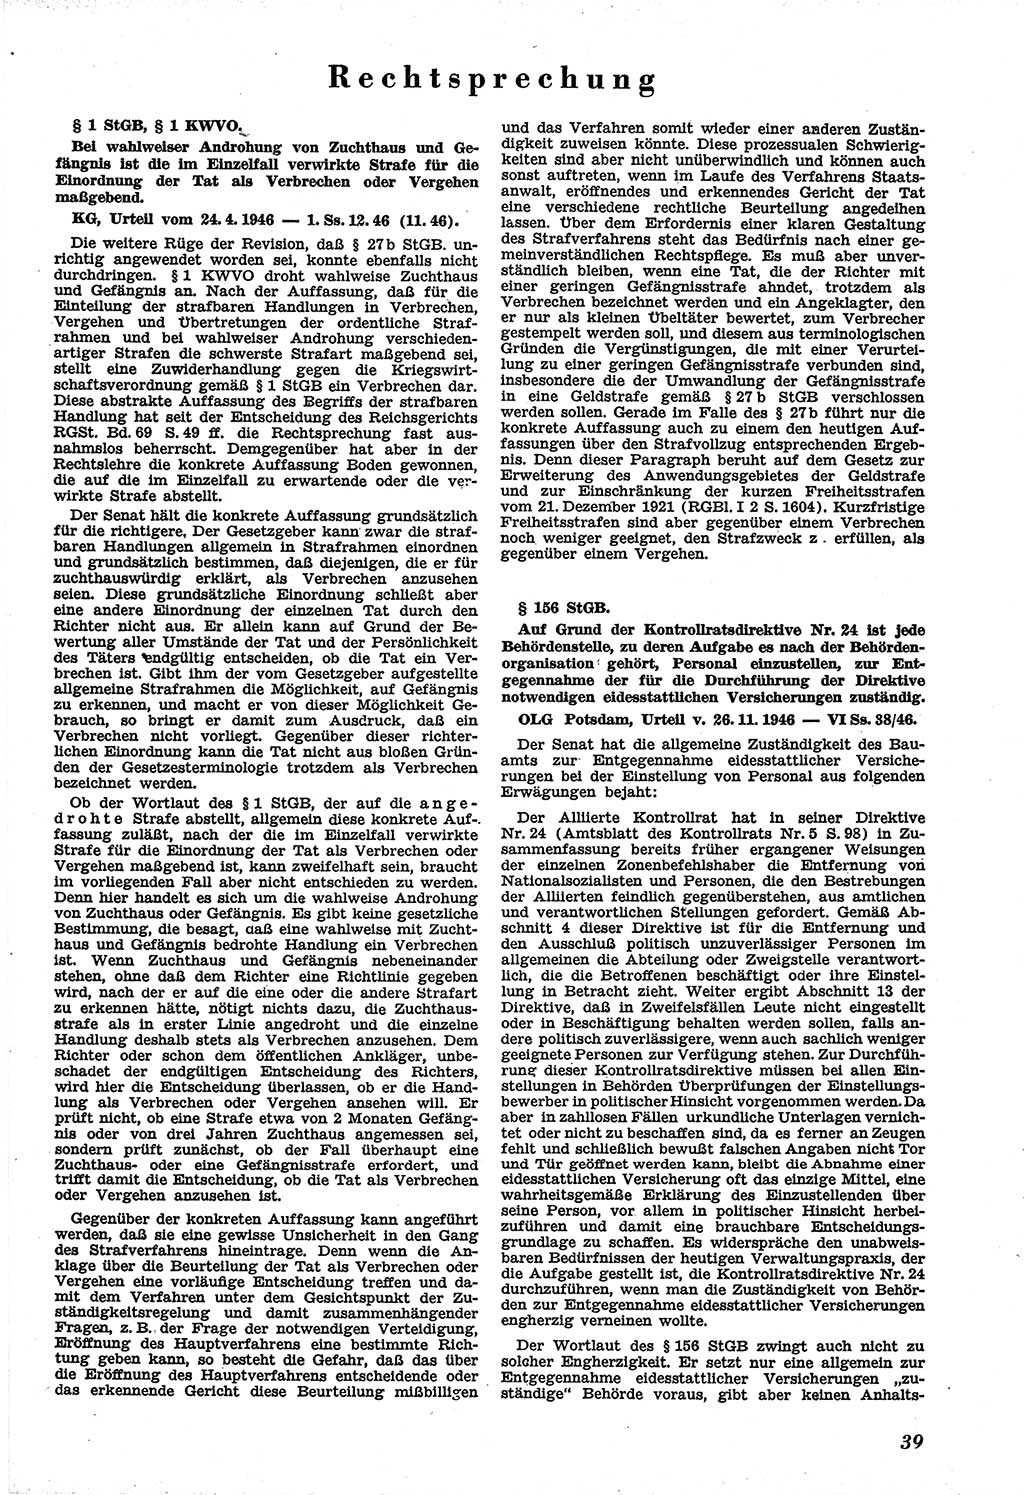 Neue Justiz (NJ), Zeitschrift für Recht und Rechtswissenschaft [Sowjetische Besatzungszone (SBZ) Deutschland], 1. Jahrgang 1947, Seite 39 (NJ SBZ Dtl. 1947, S. 39)